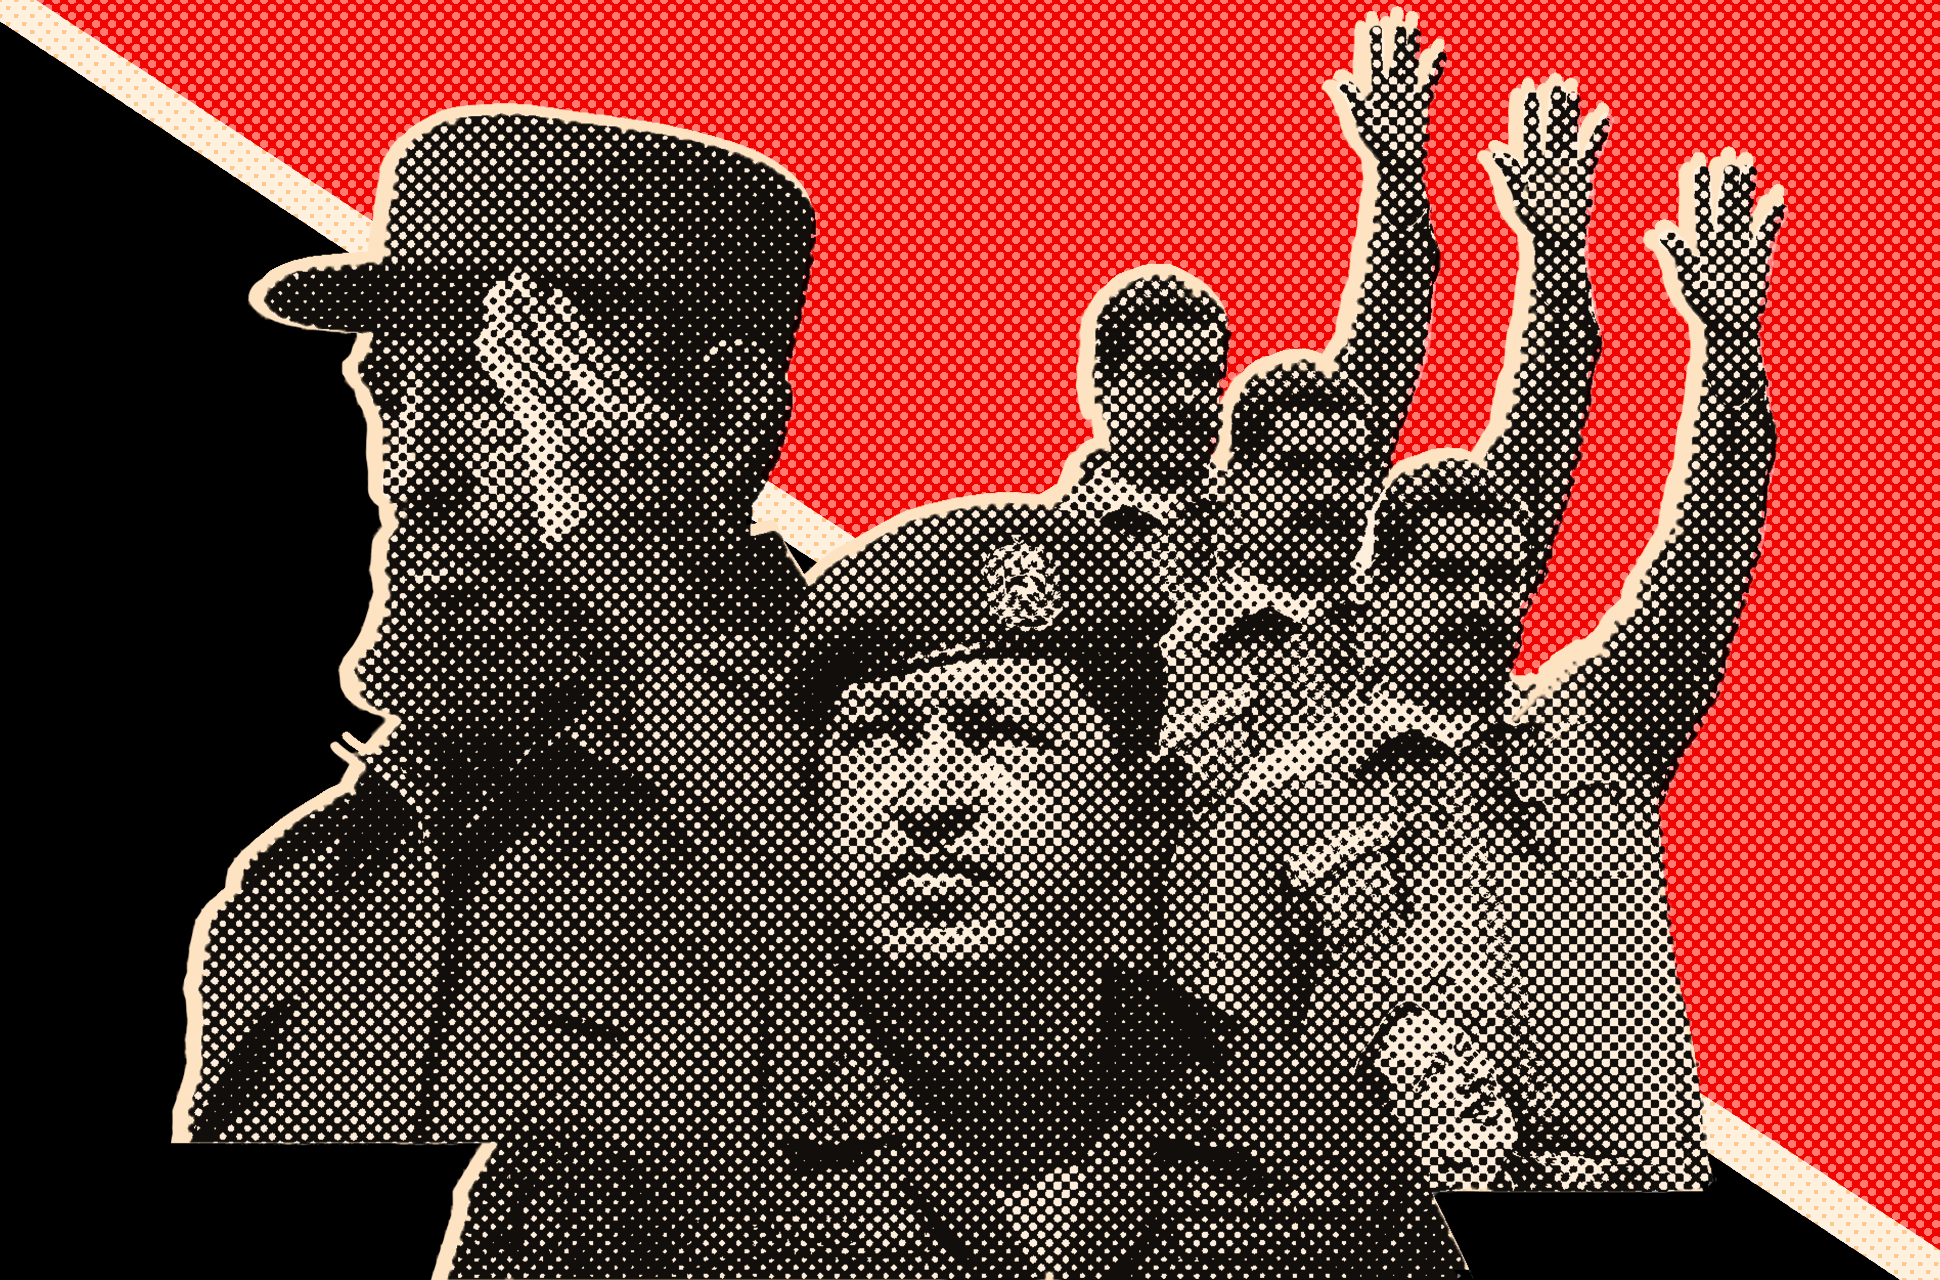 La revolución en América Latina: la historia no se agota en Cuba